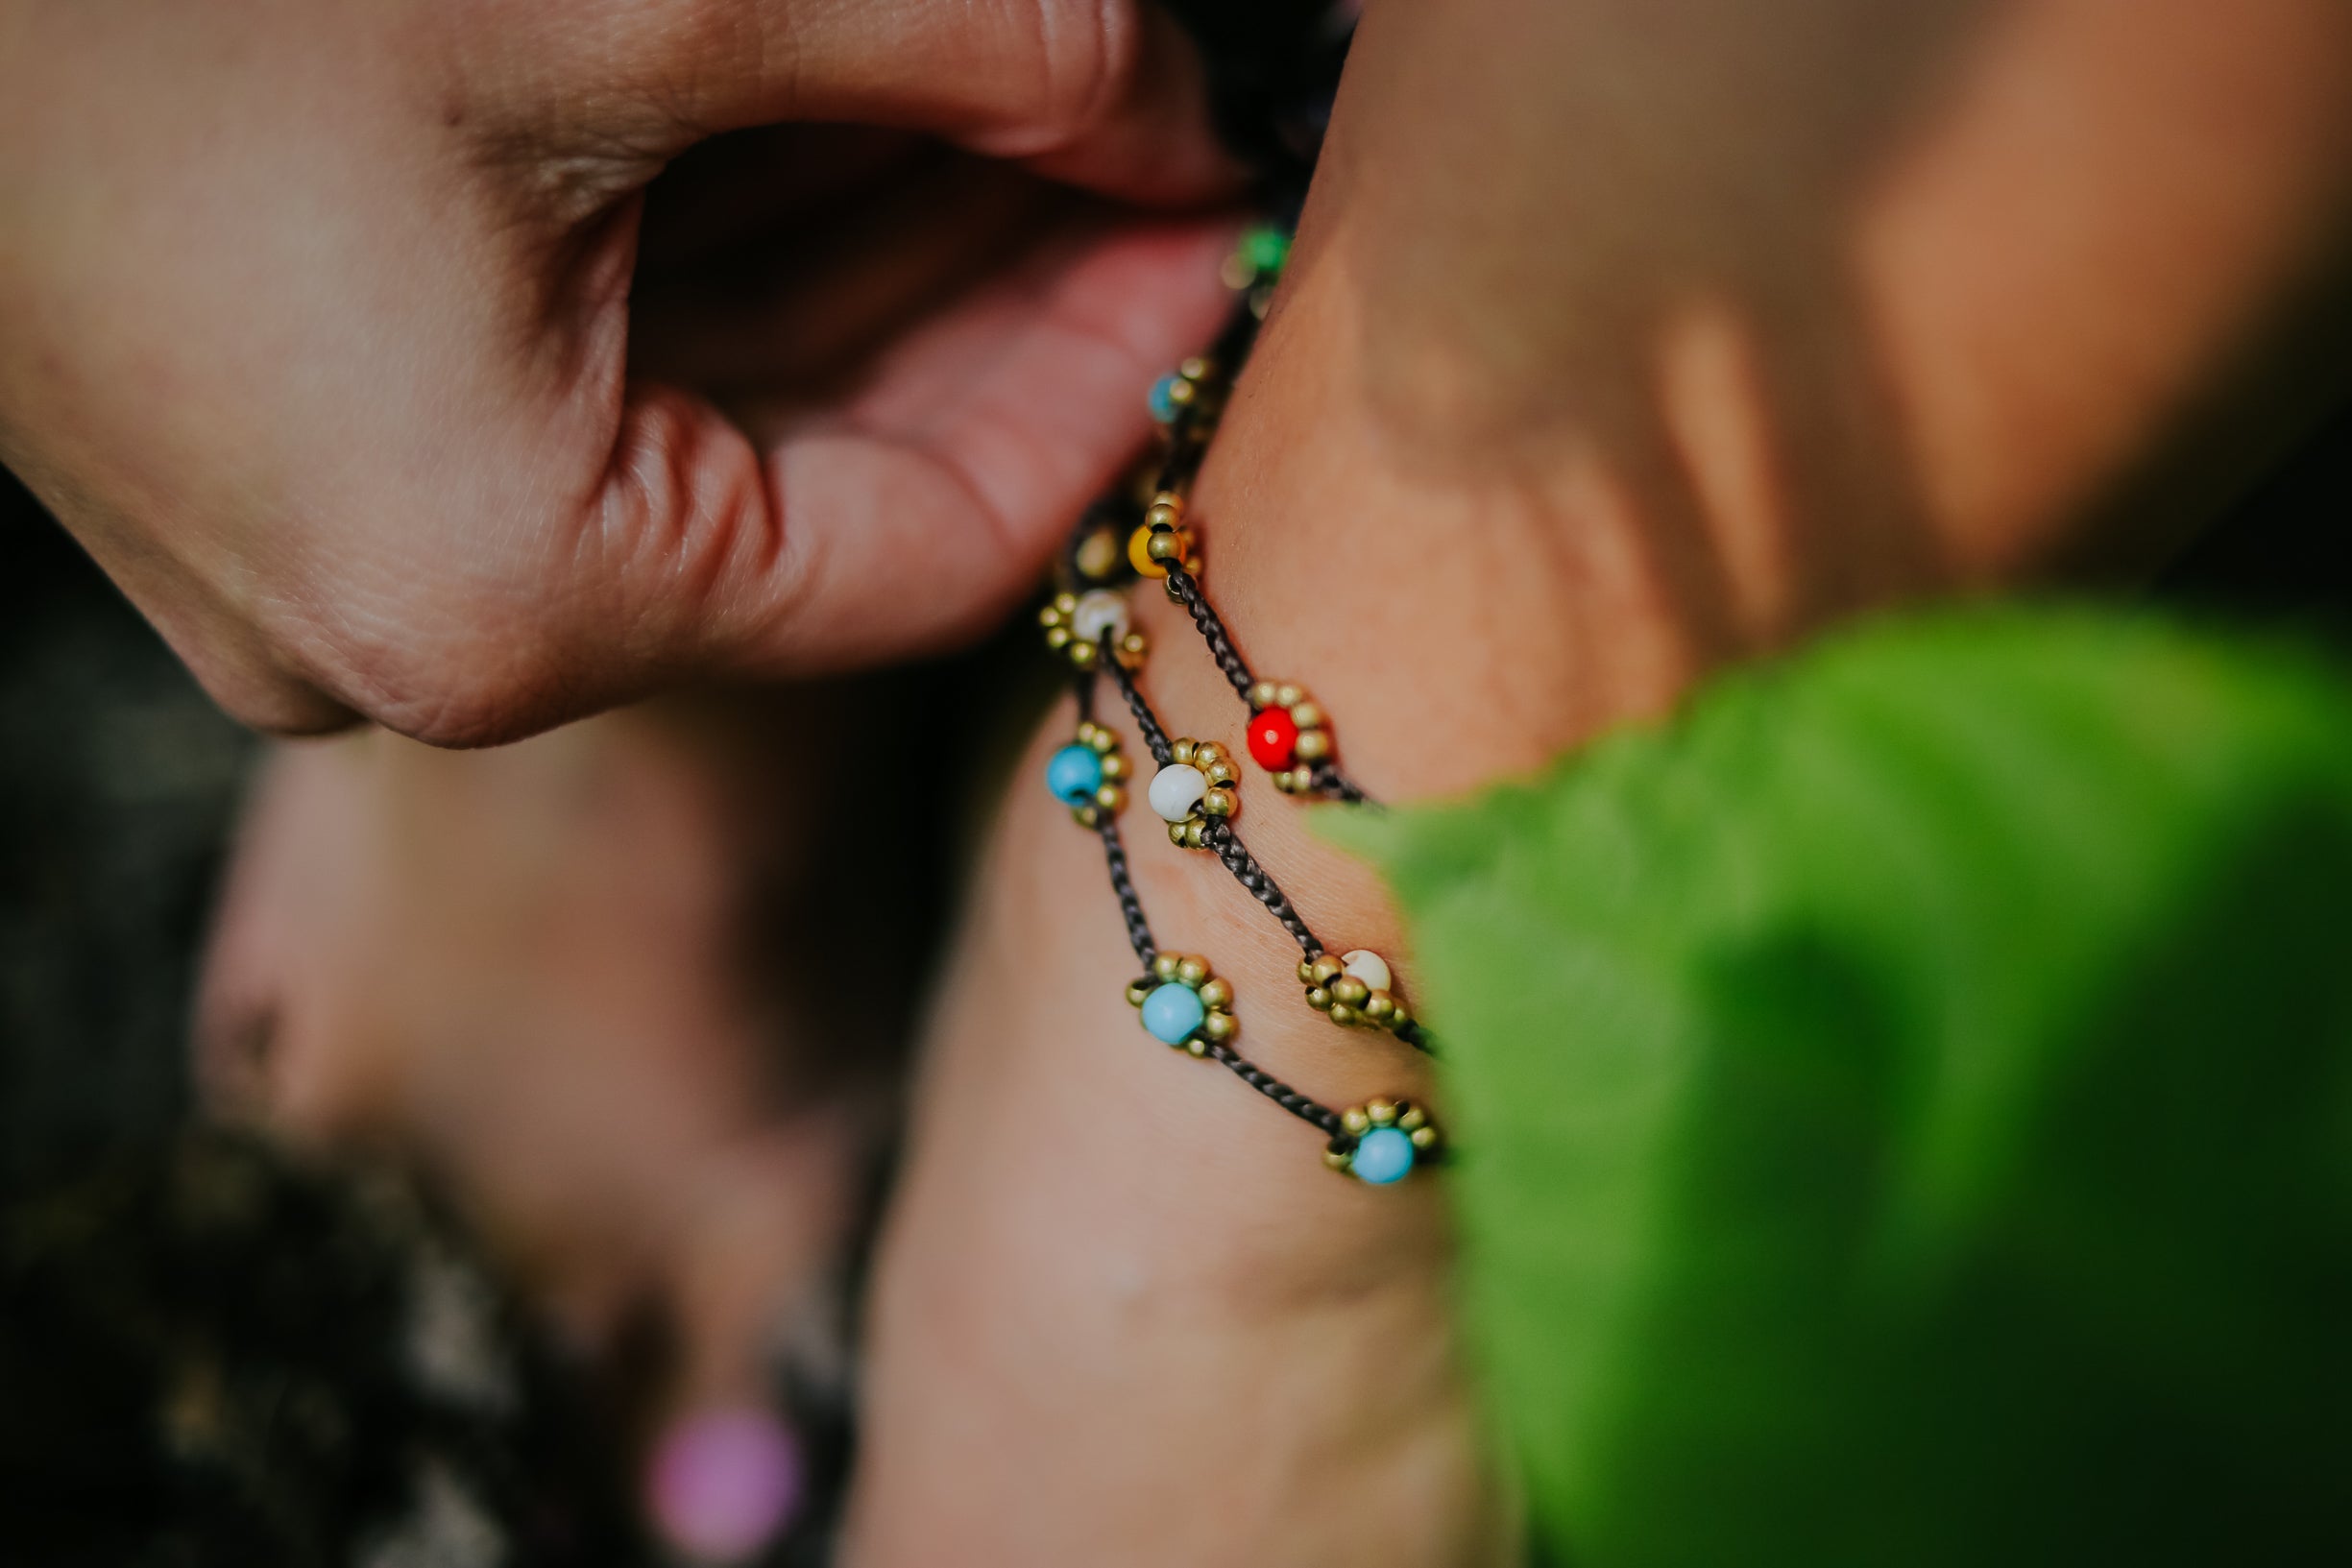 Goa Beads Anklet - Oriental